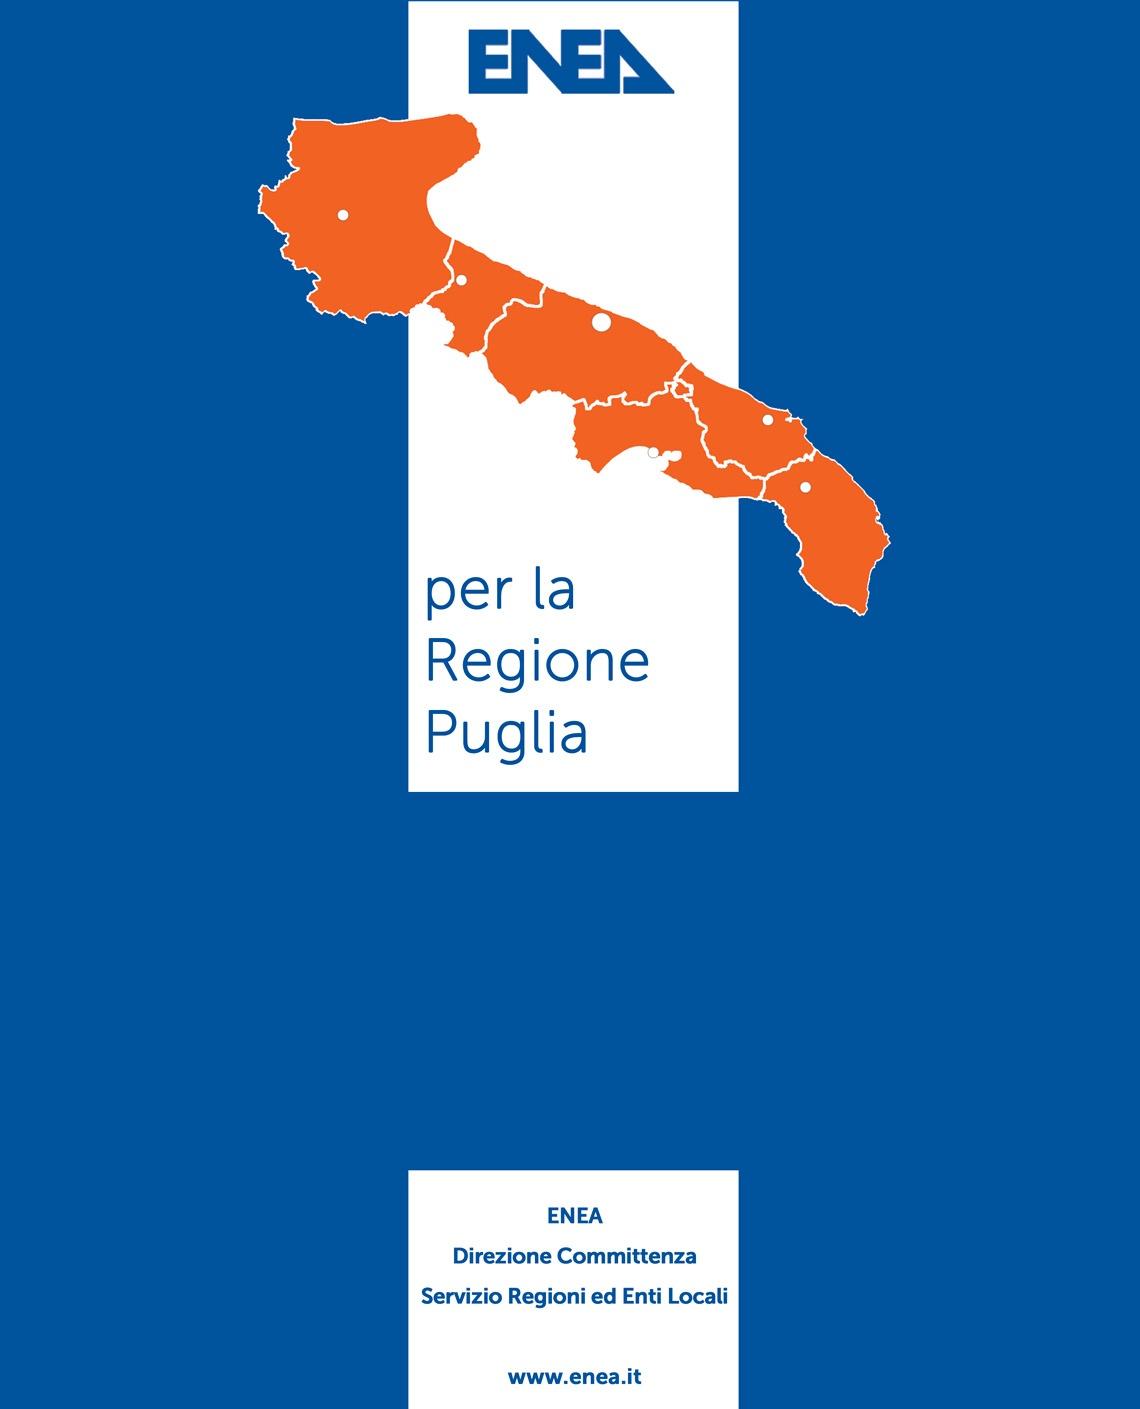 ENEA per la Regione Puglia